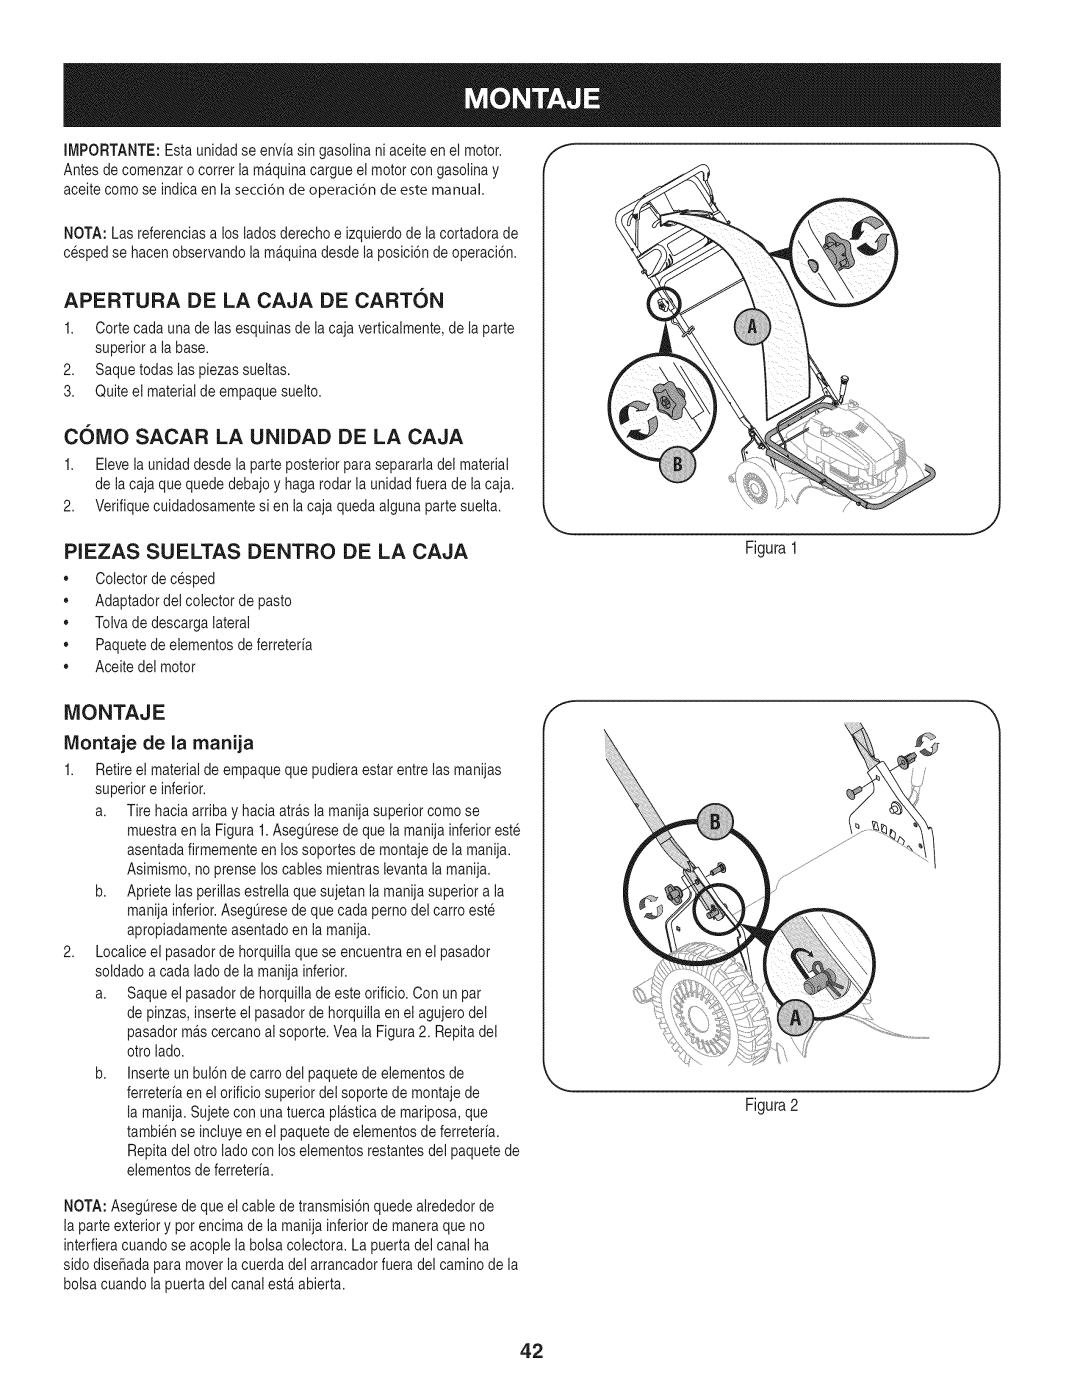 Craftsman 88721 manual Apertura De La Caja De Carton, C61VIO SACAR LA UNIDAD DE LA CAJA, Piezas Sueltas Dentro De La Caja 